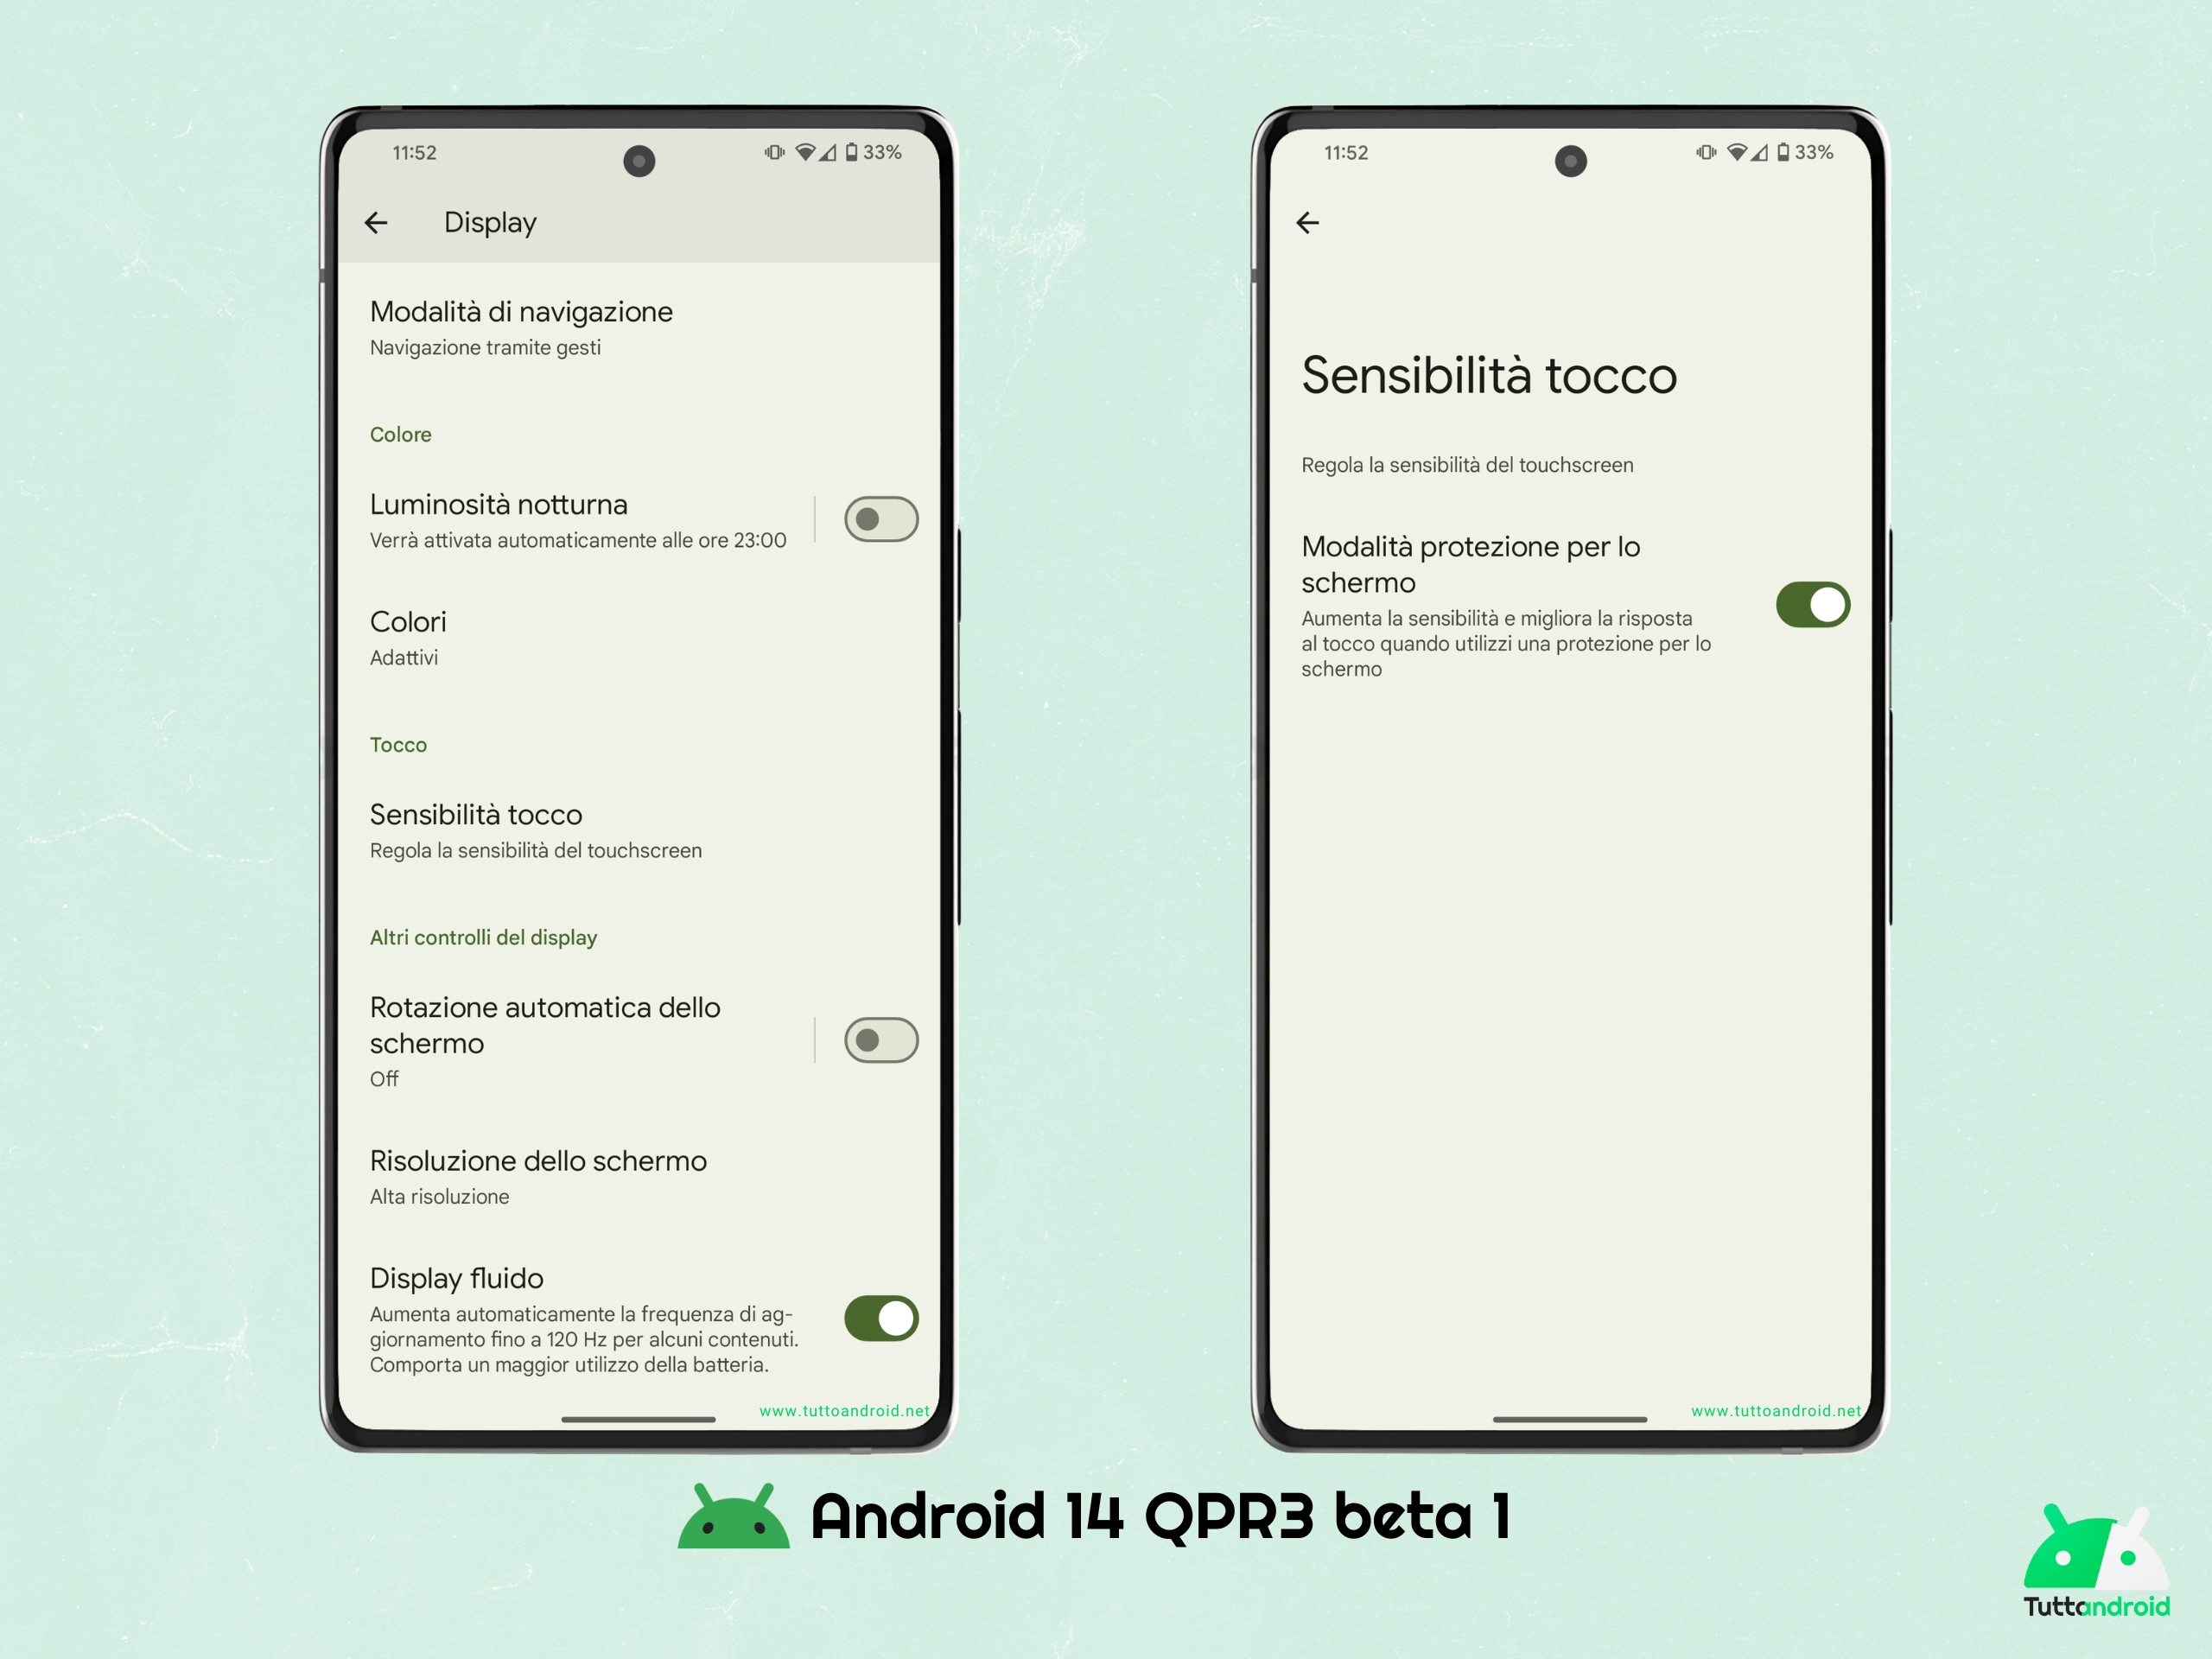 Android 14 QPR3 beta 1 - Sensibilità tocco